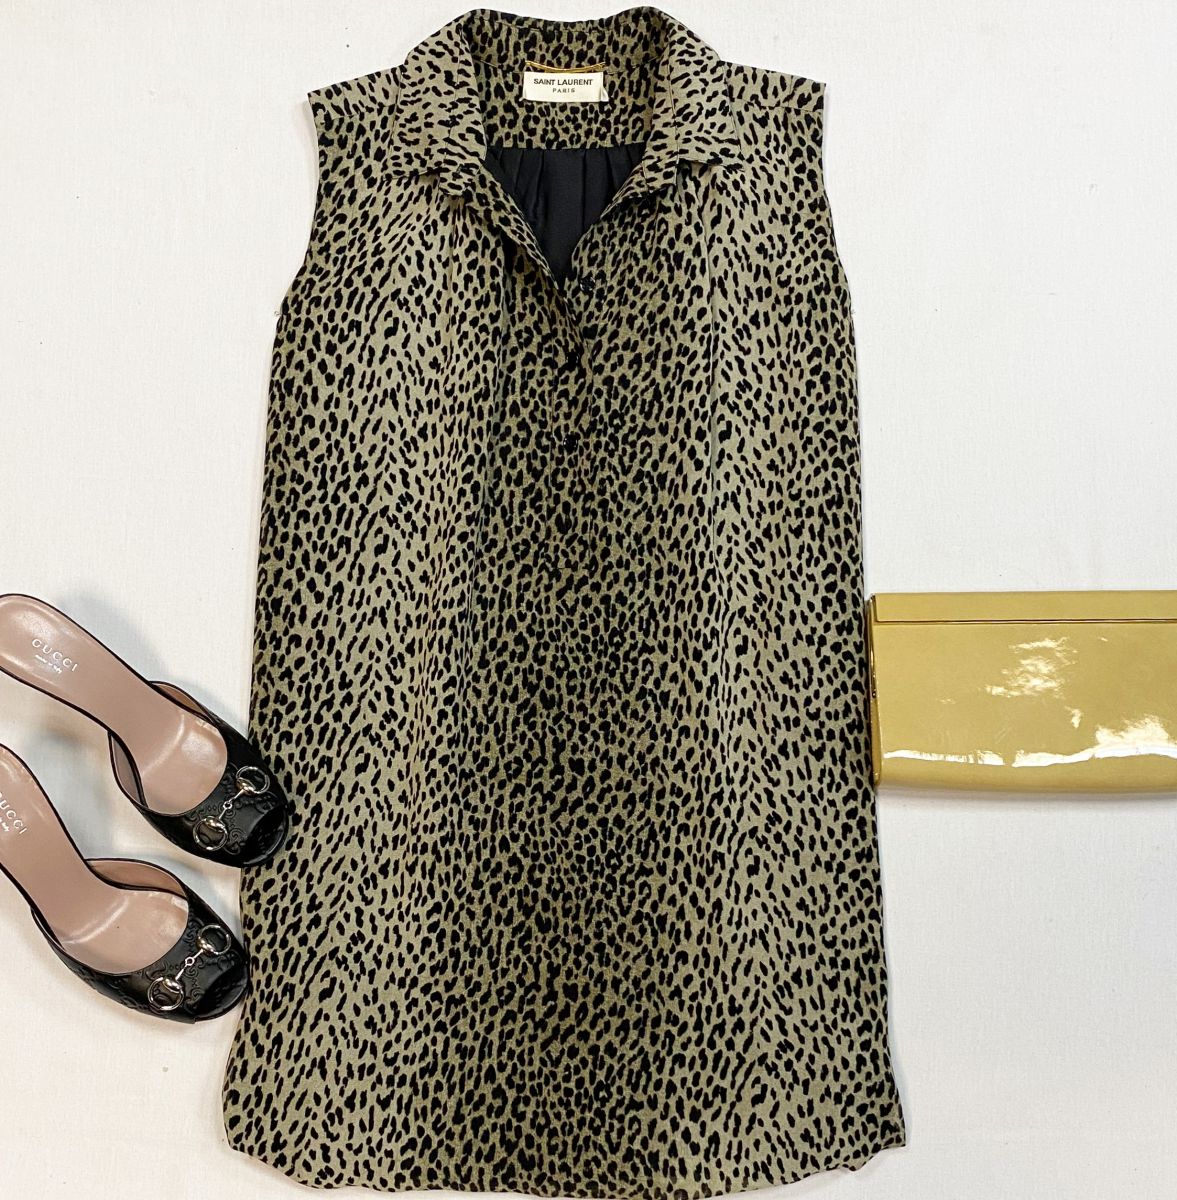 Платье Saint Laurent размер 36 цена 23 078 руб
Сабо Gucci размер 38 цена 23 078 руб
Клатч Jimmy Choo 